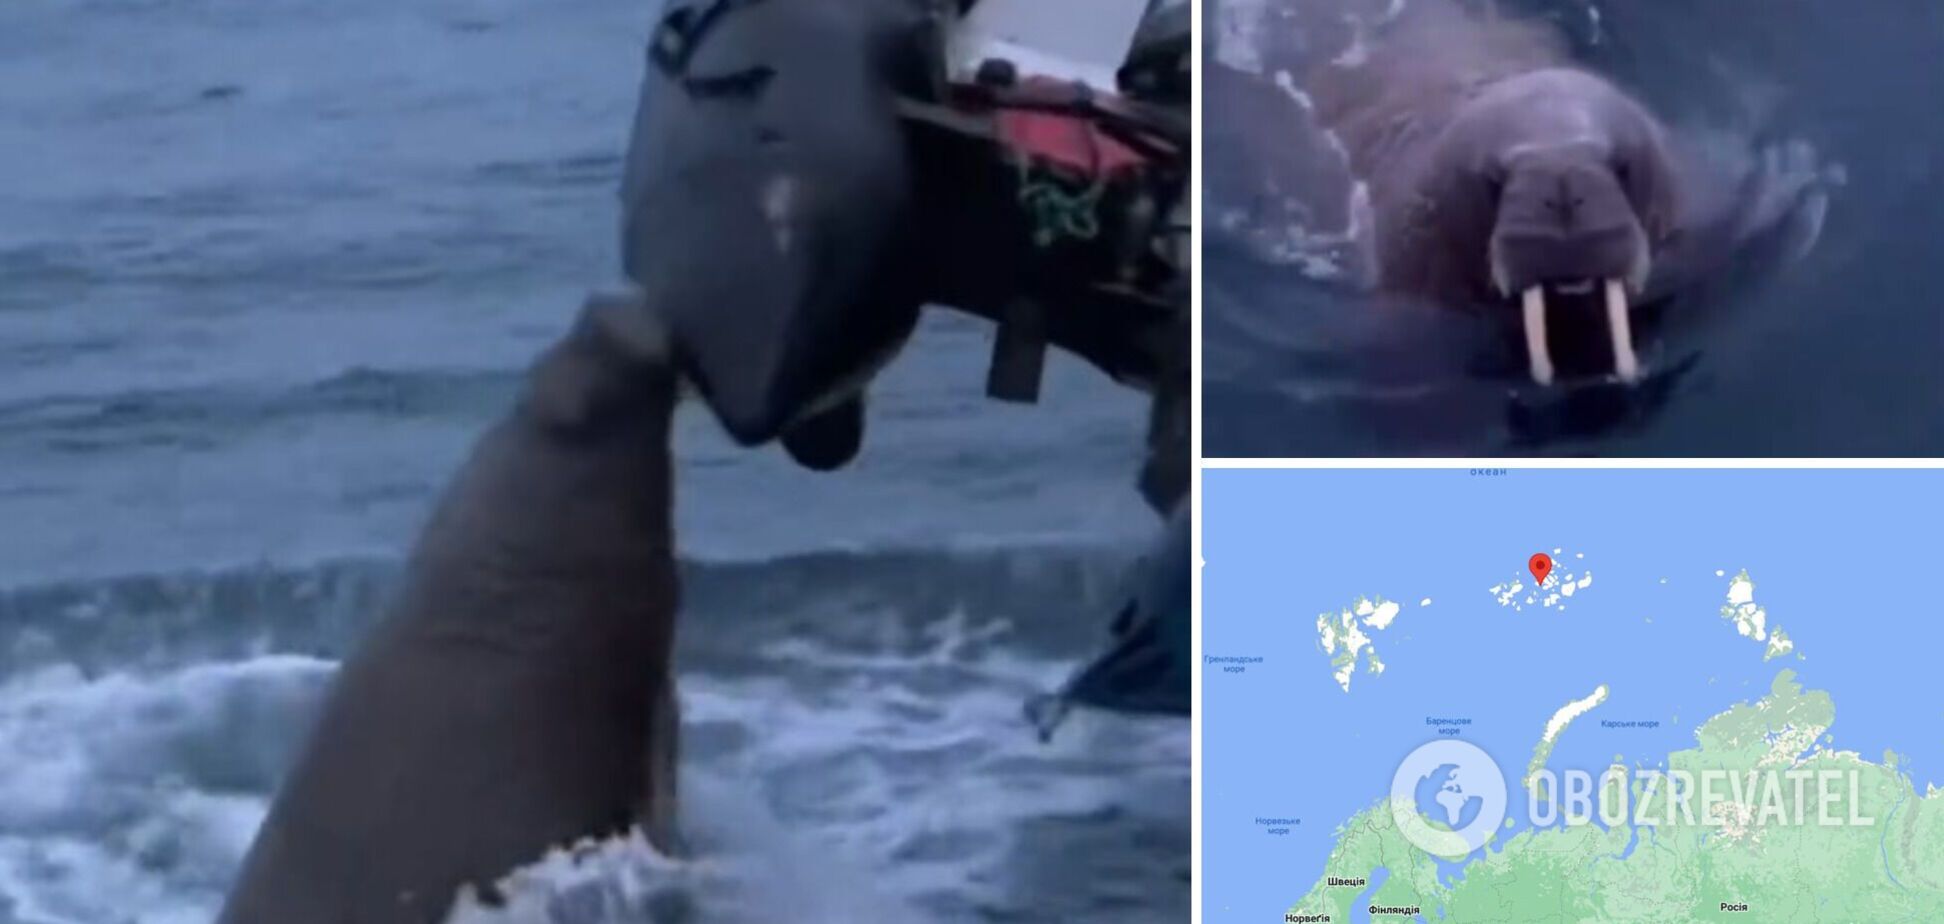 'Защищала свою территорию': моржиха напала на лодку россиян в Северном Ледовитом океане. Видео